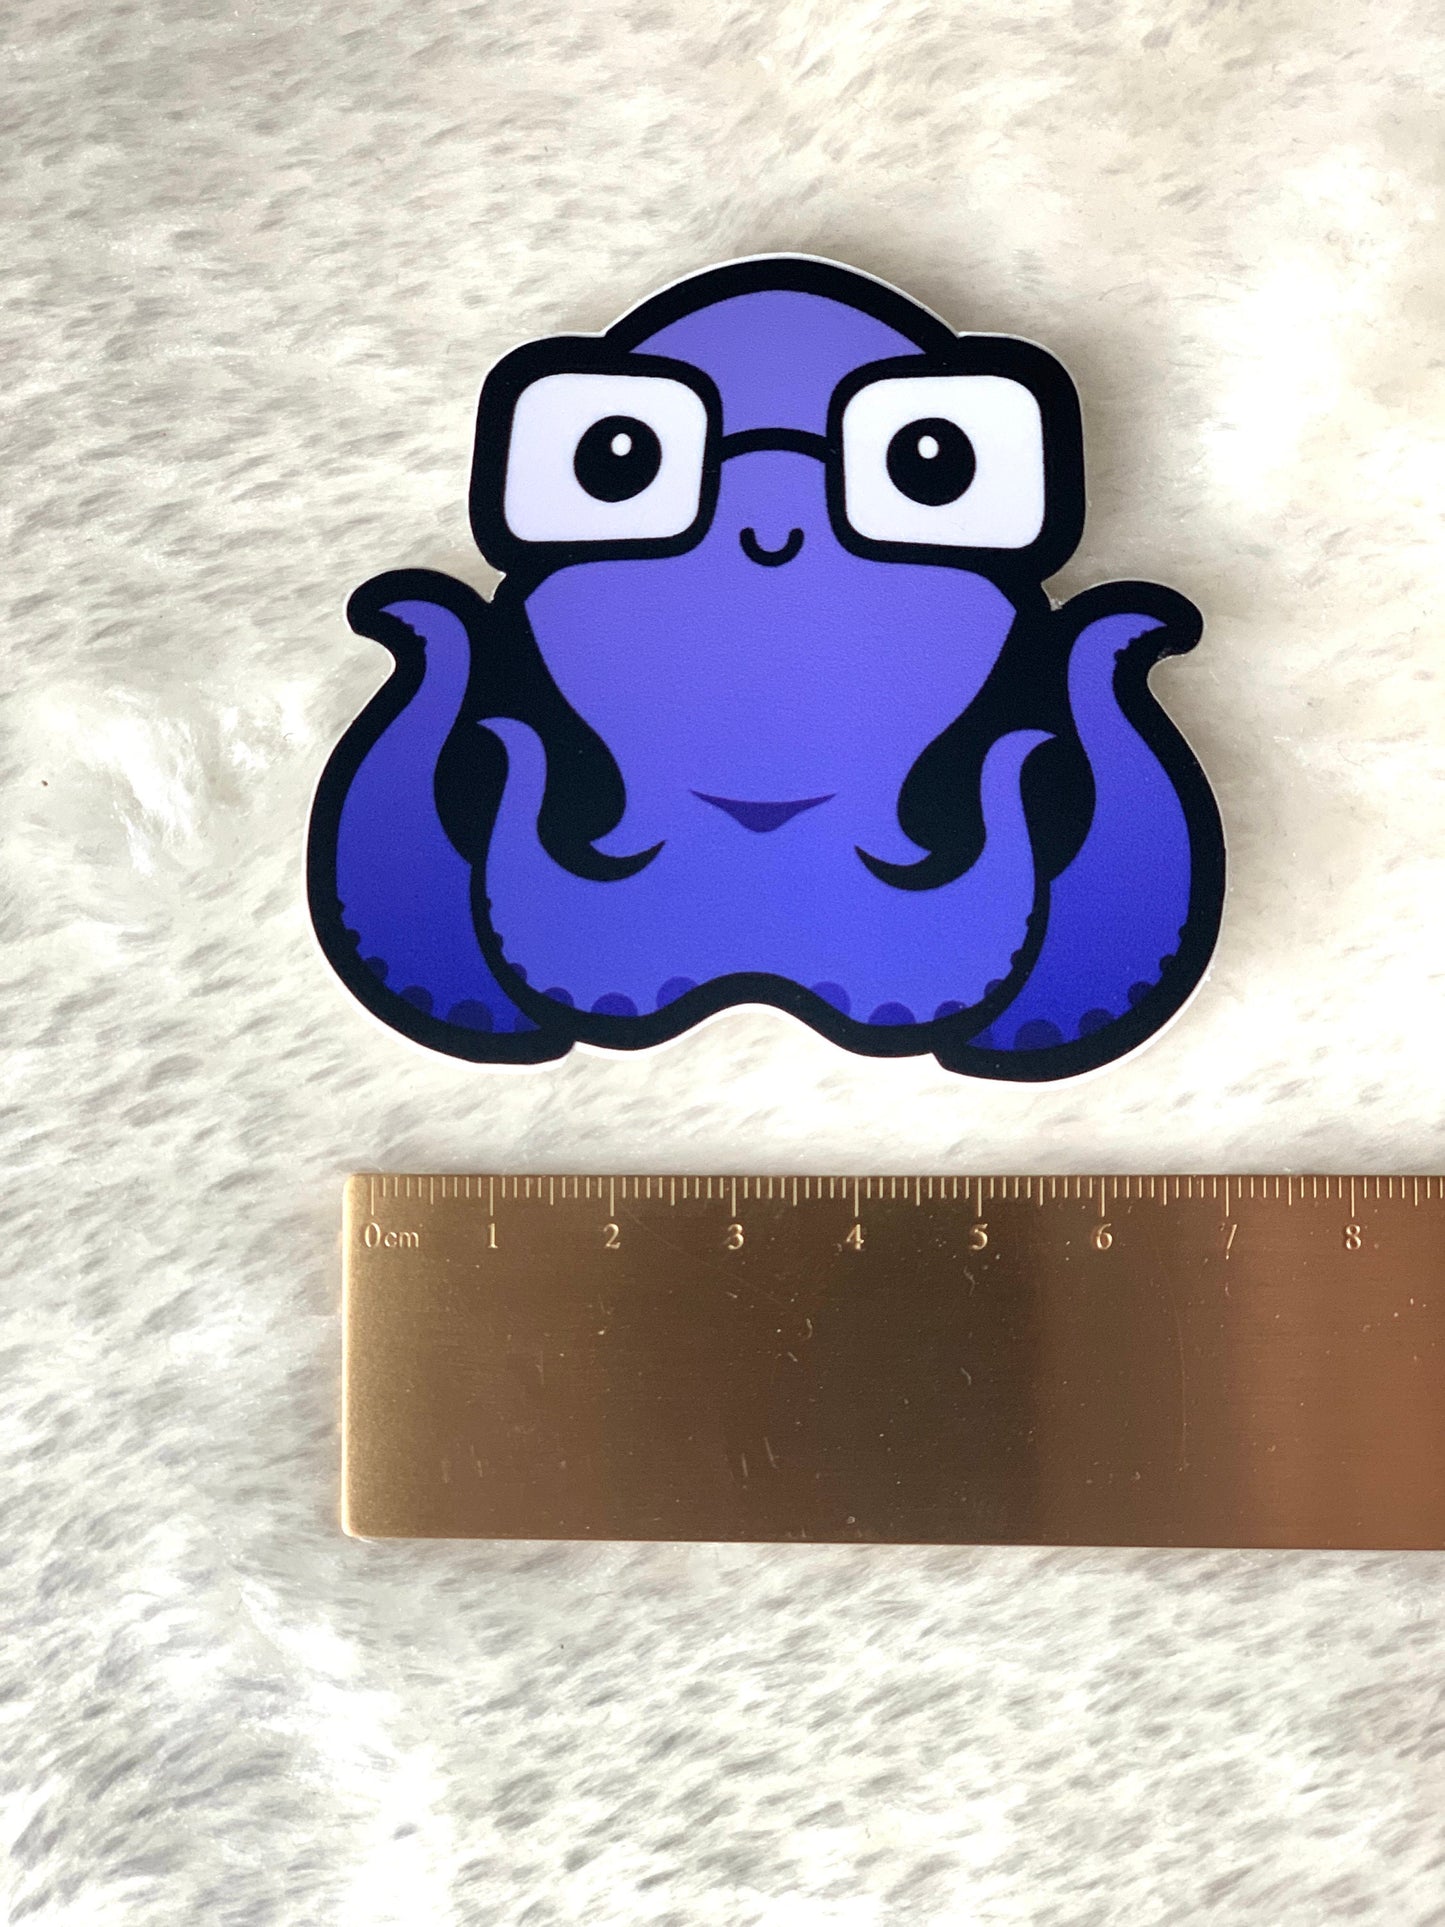 inqling octopus vinyl sticker